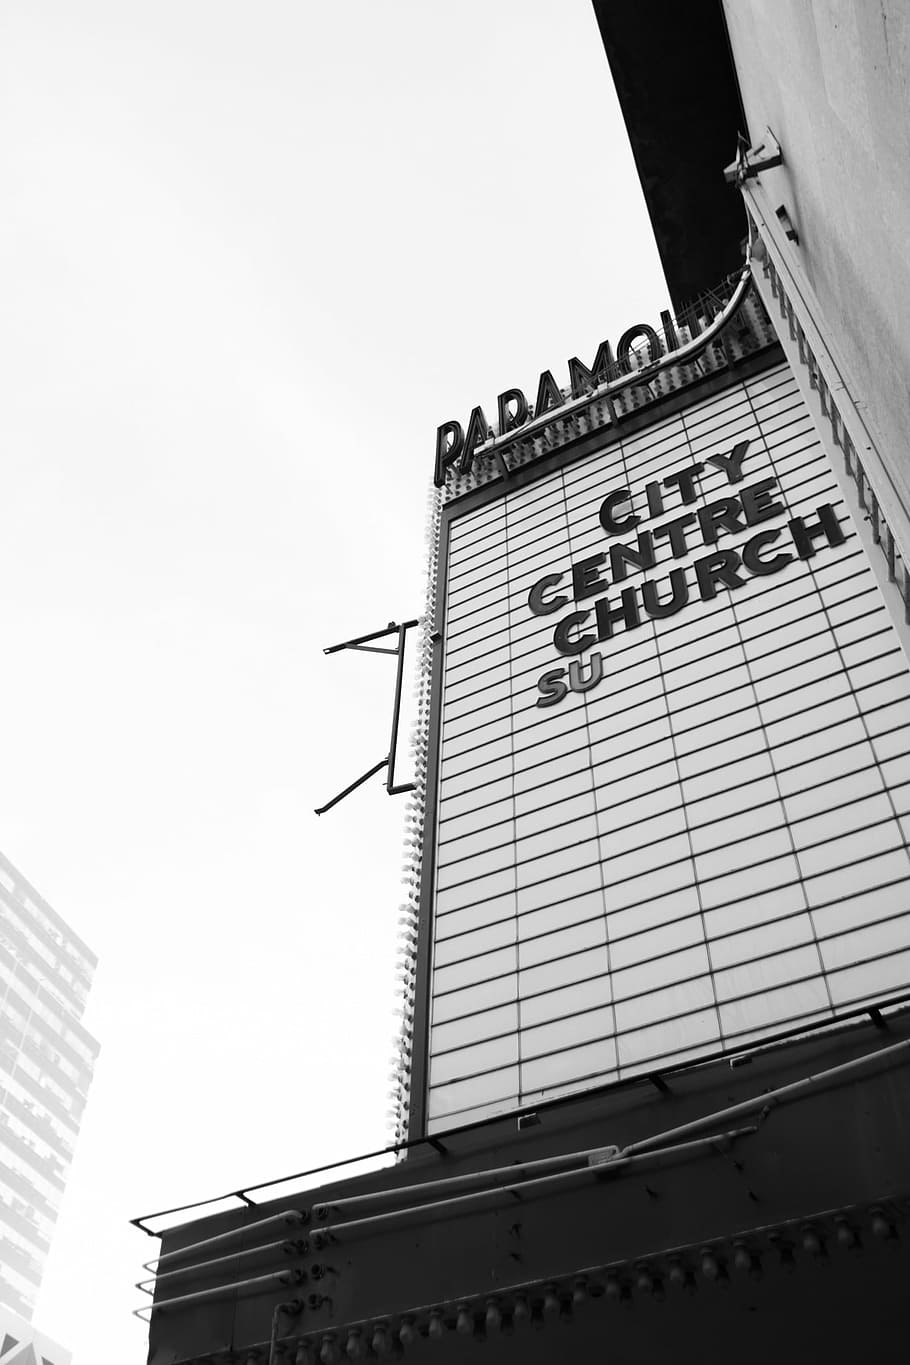 fotografia em escala de cinza, igreja do centro da cidade su, cidade, centure, igreja, teatro, igreja do centro da cidade, placa, preto e branco, arquitetura